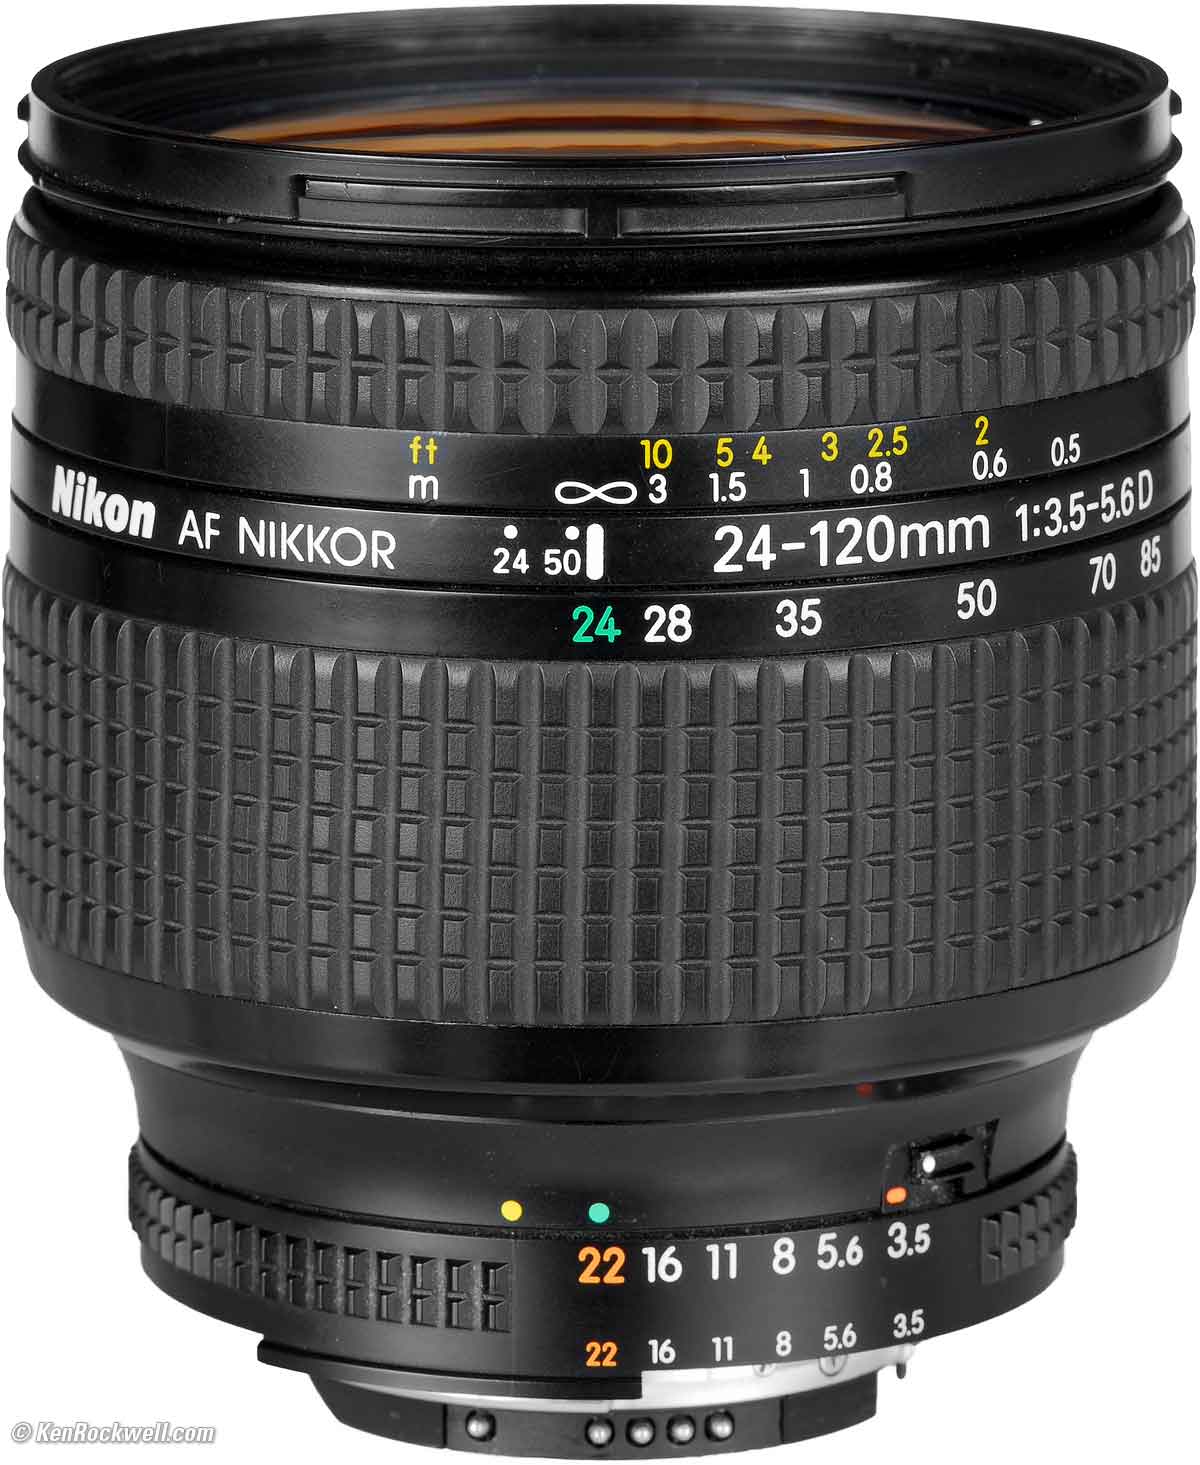 激安格安割引情報満載 Nikon ニコン AF 24-120mm F3.5-5.6D #198330